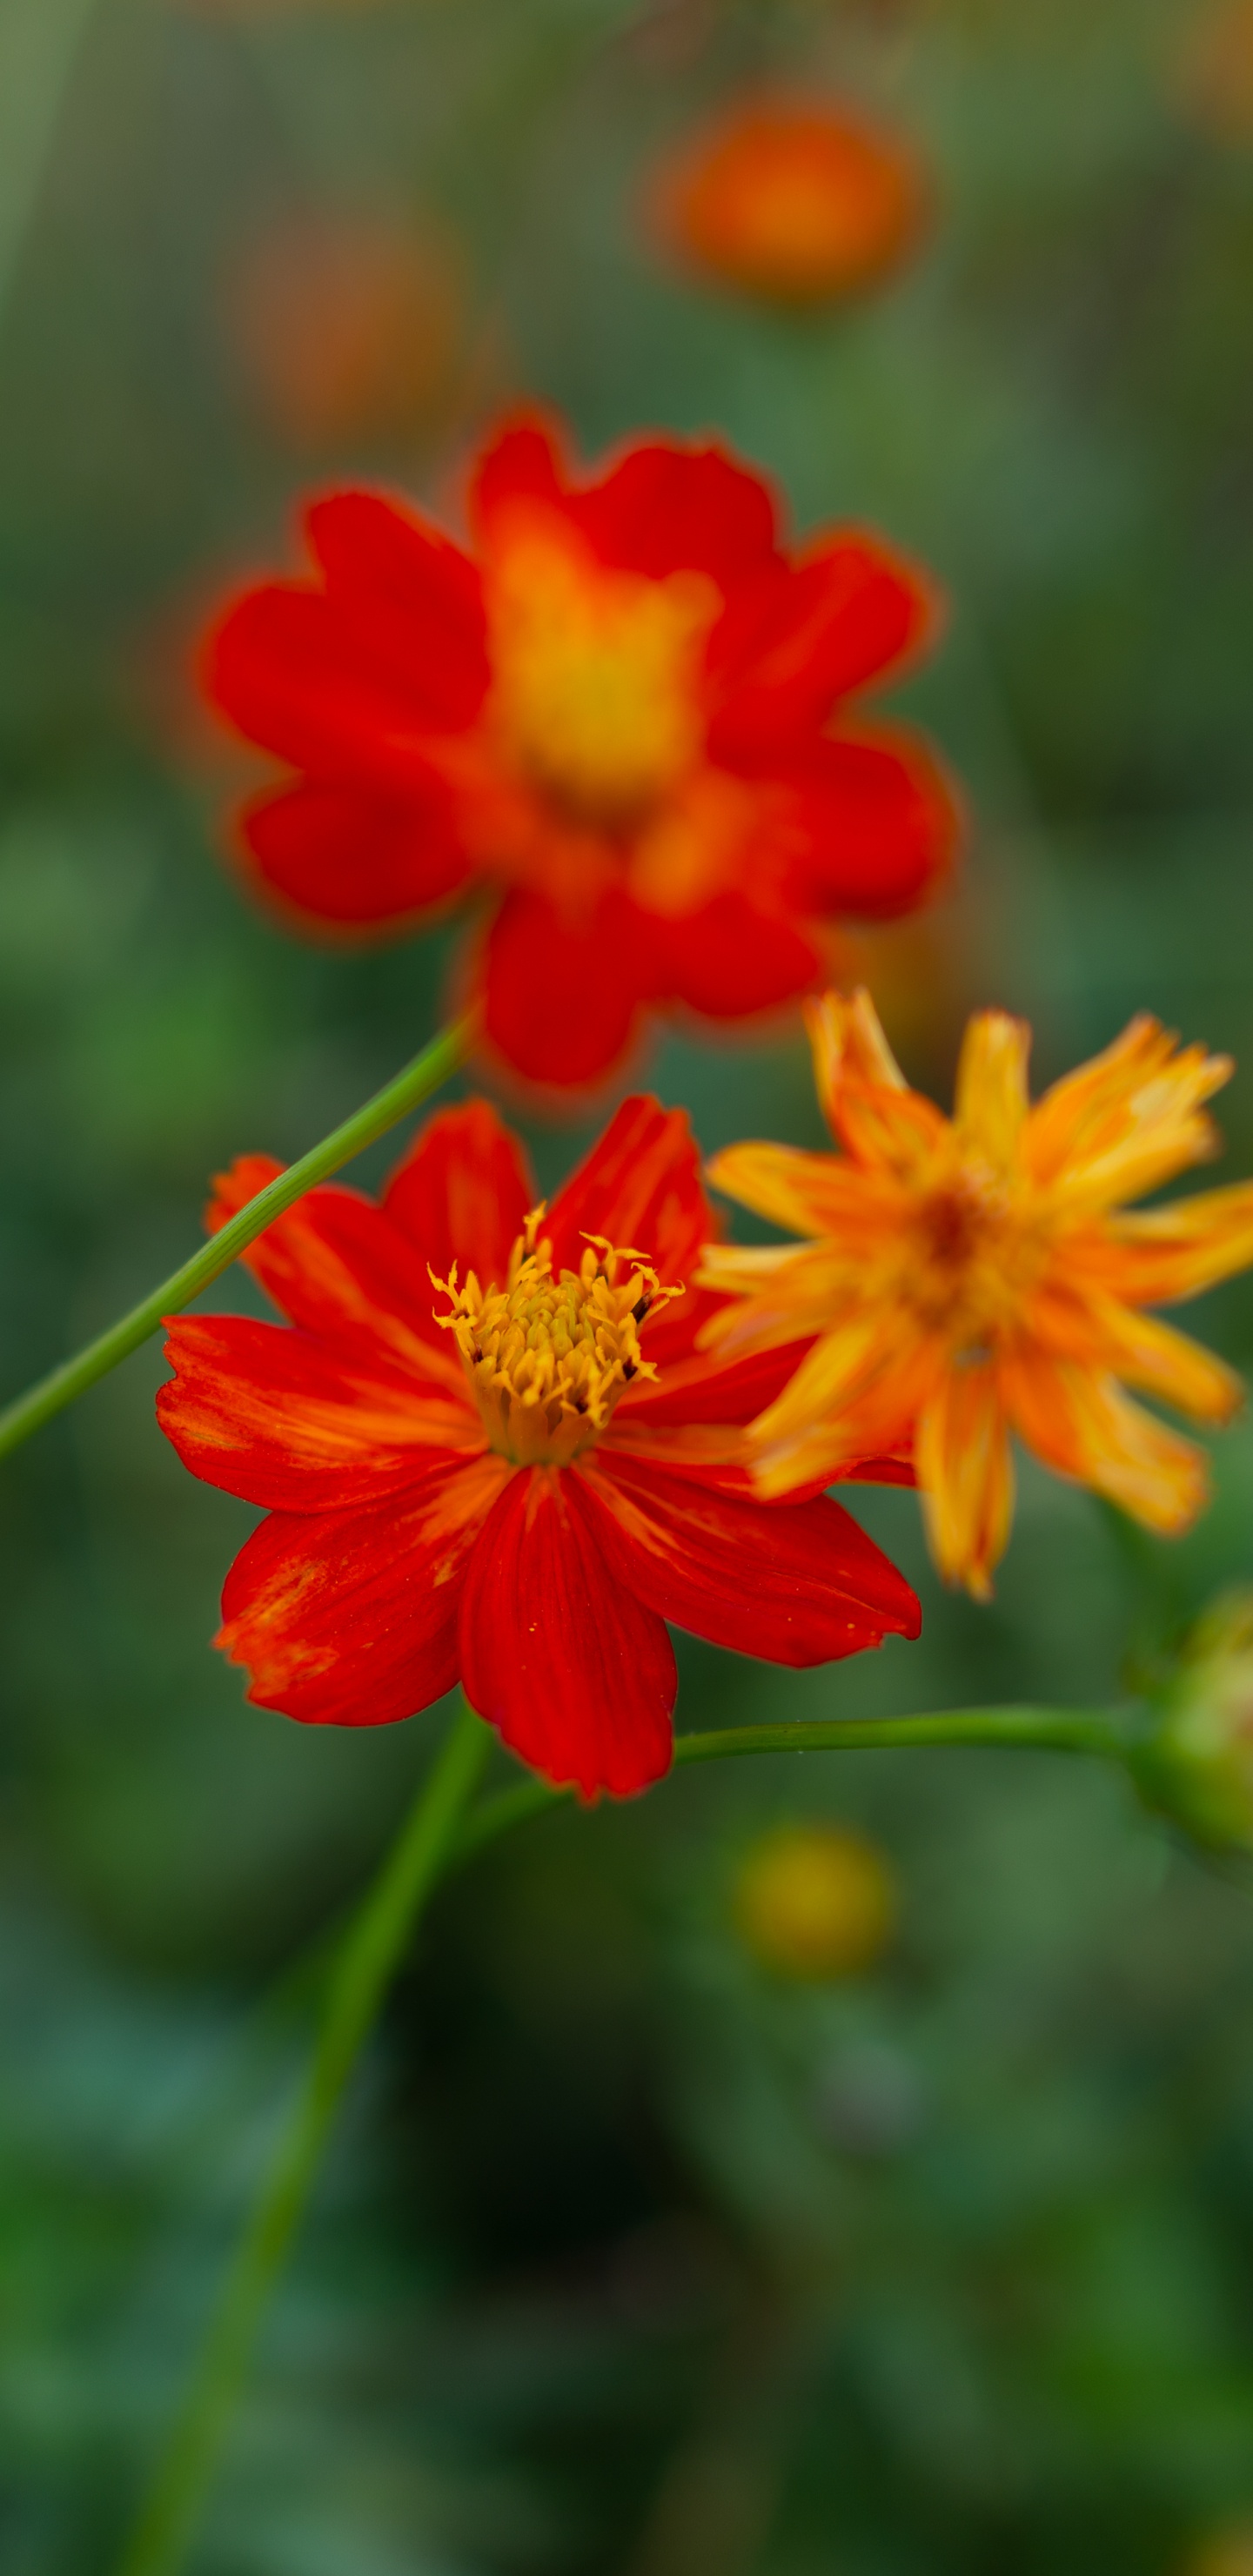 Red Flower in Tilt Shift Lens. Wallpaper in 1440x2960 Resolution